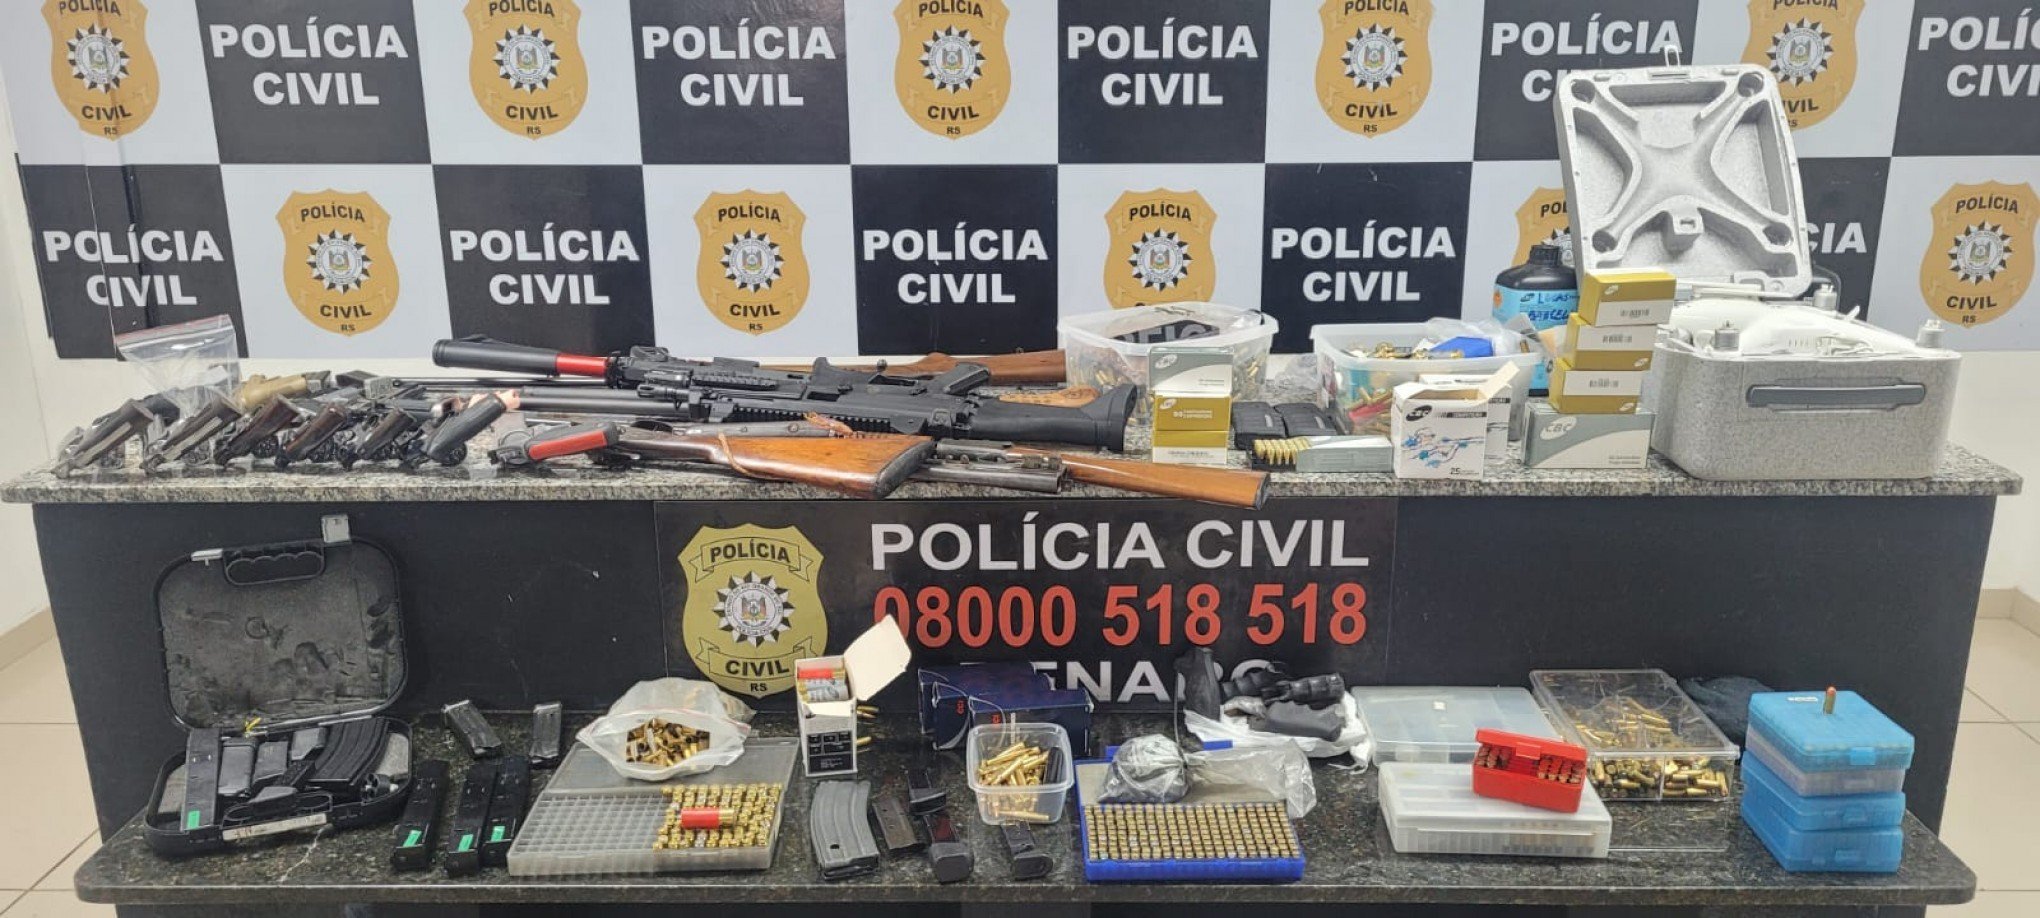 TROPA DO PINGUIM: Conheça o grupo criminoso responsável por vender armas de uso restrito